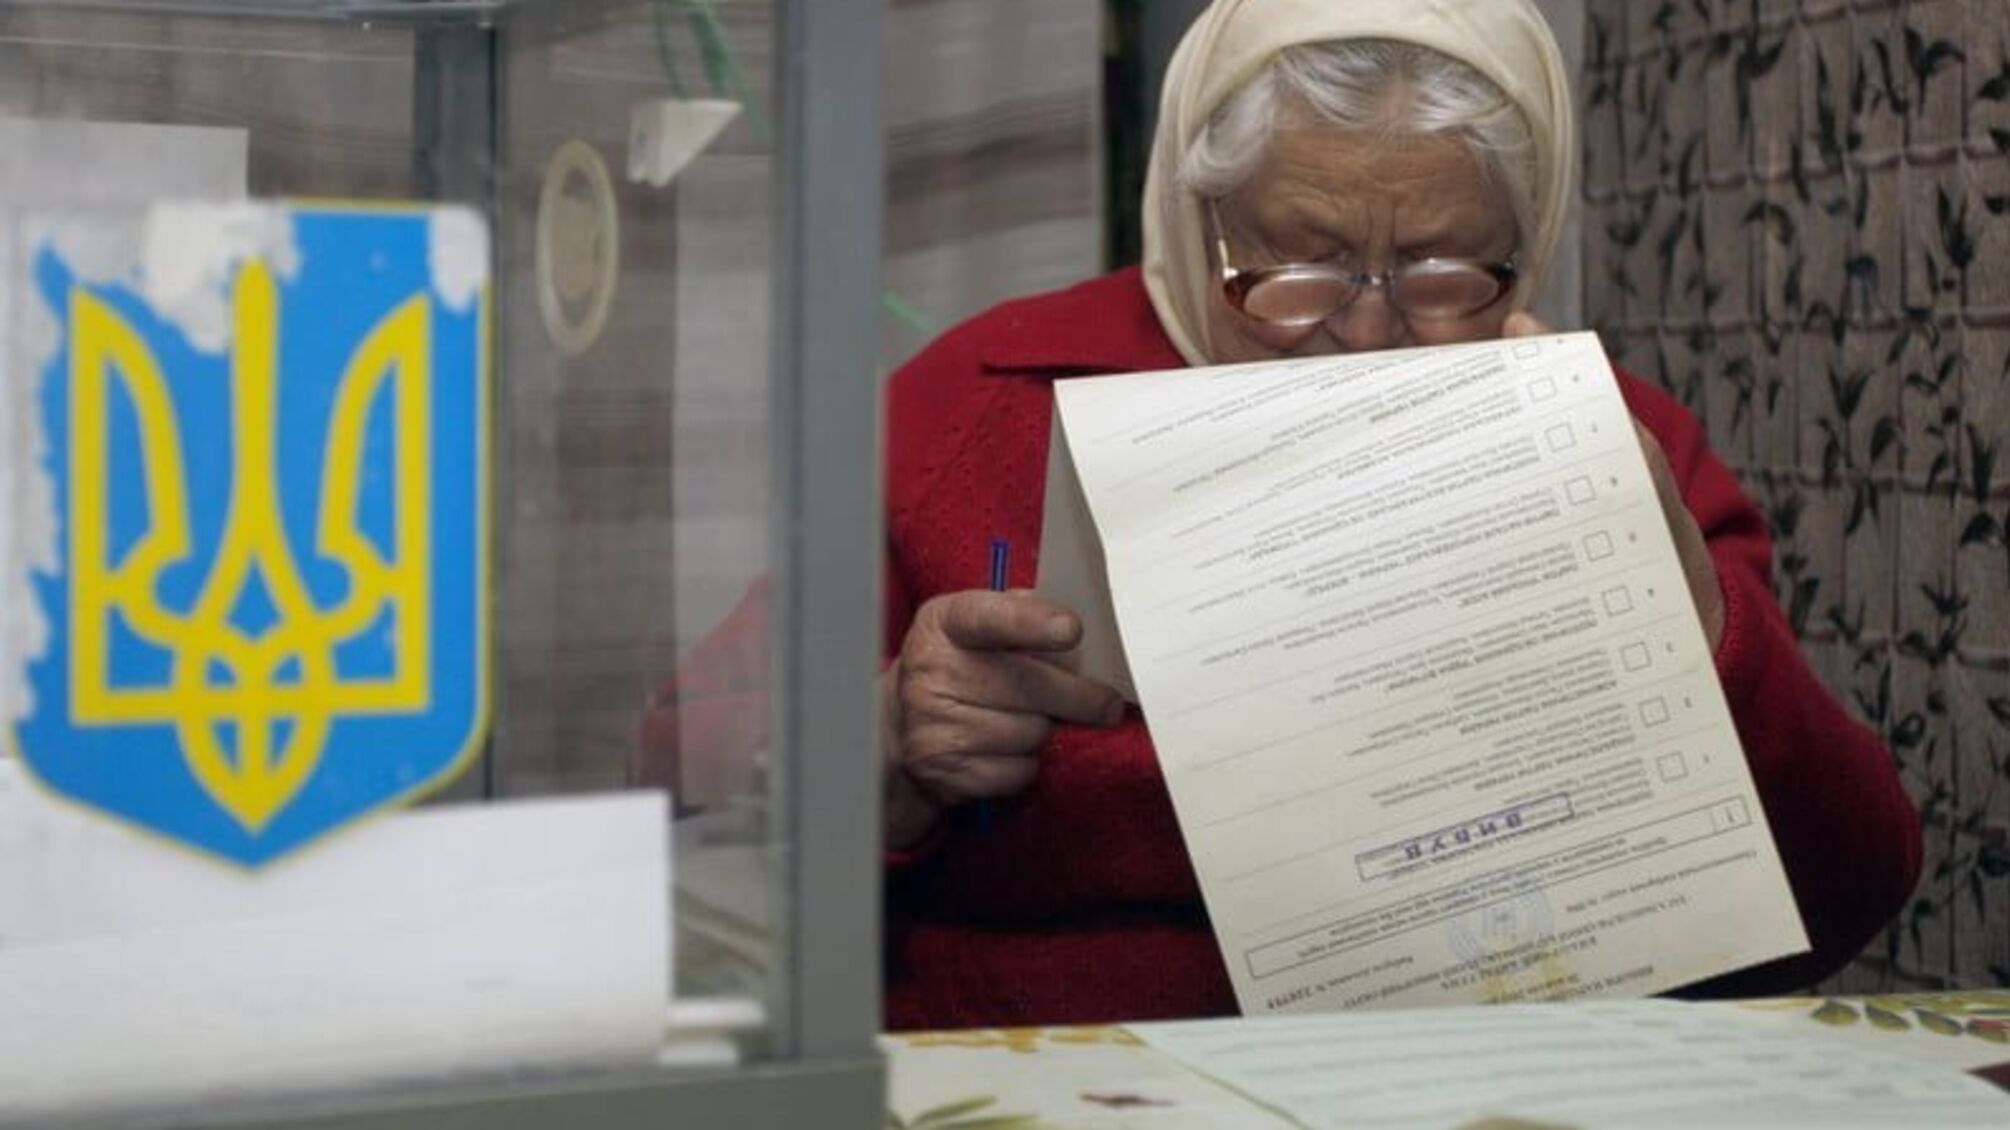 Лише 1% виборчих дільниць в Україні є доступними для осіб з інвалідністю, - Денисова